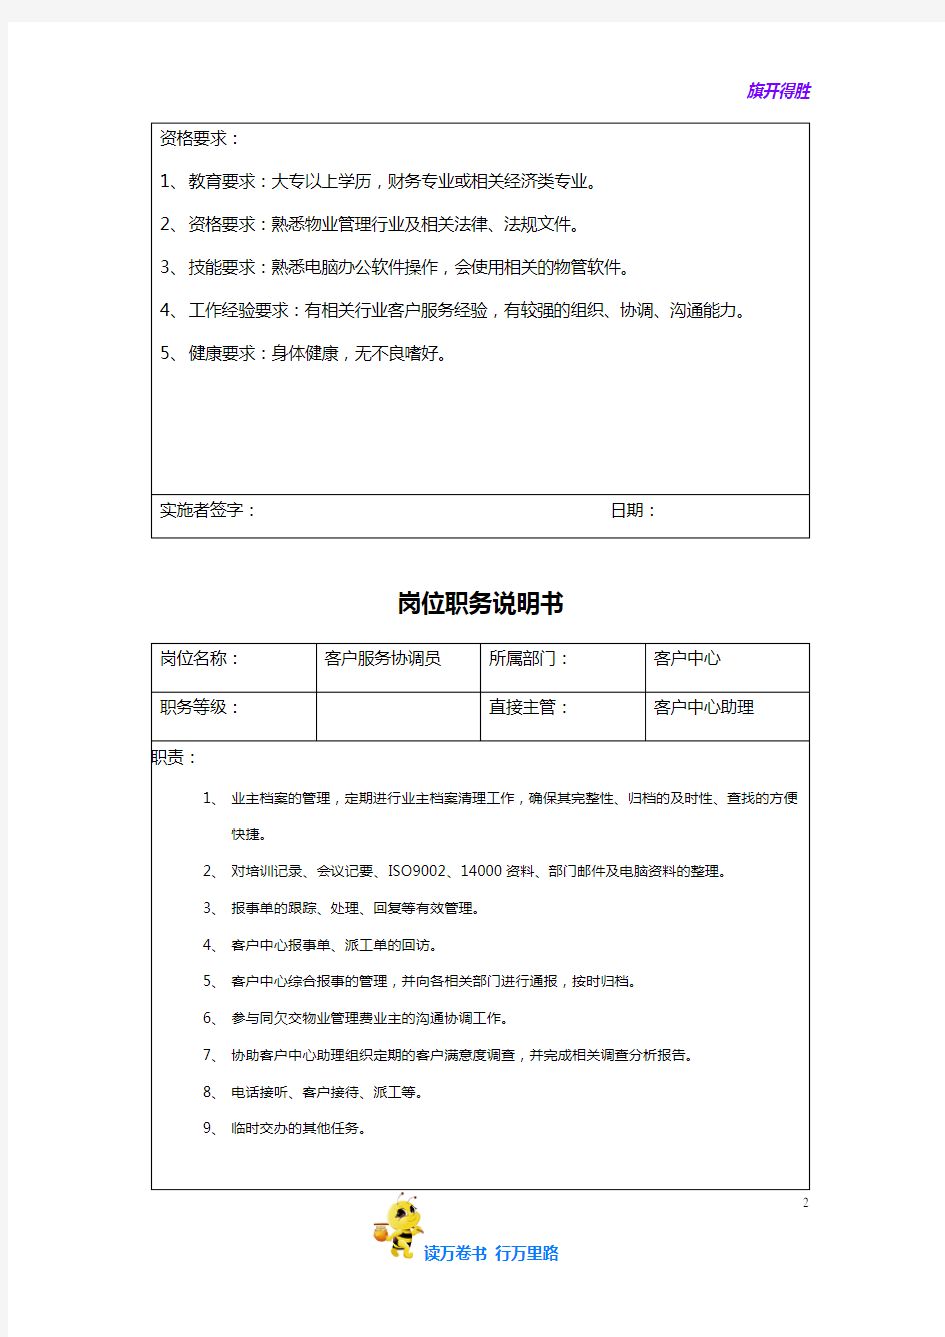 【物业管理 重庆龙湖】客户中心人员岗位职务说明书